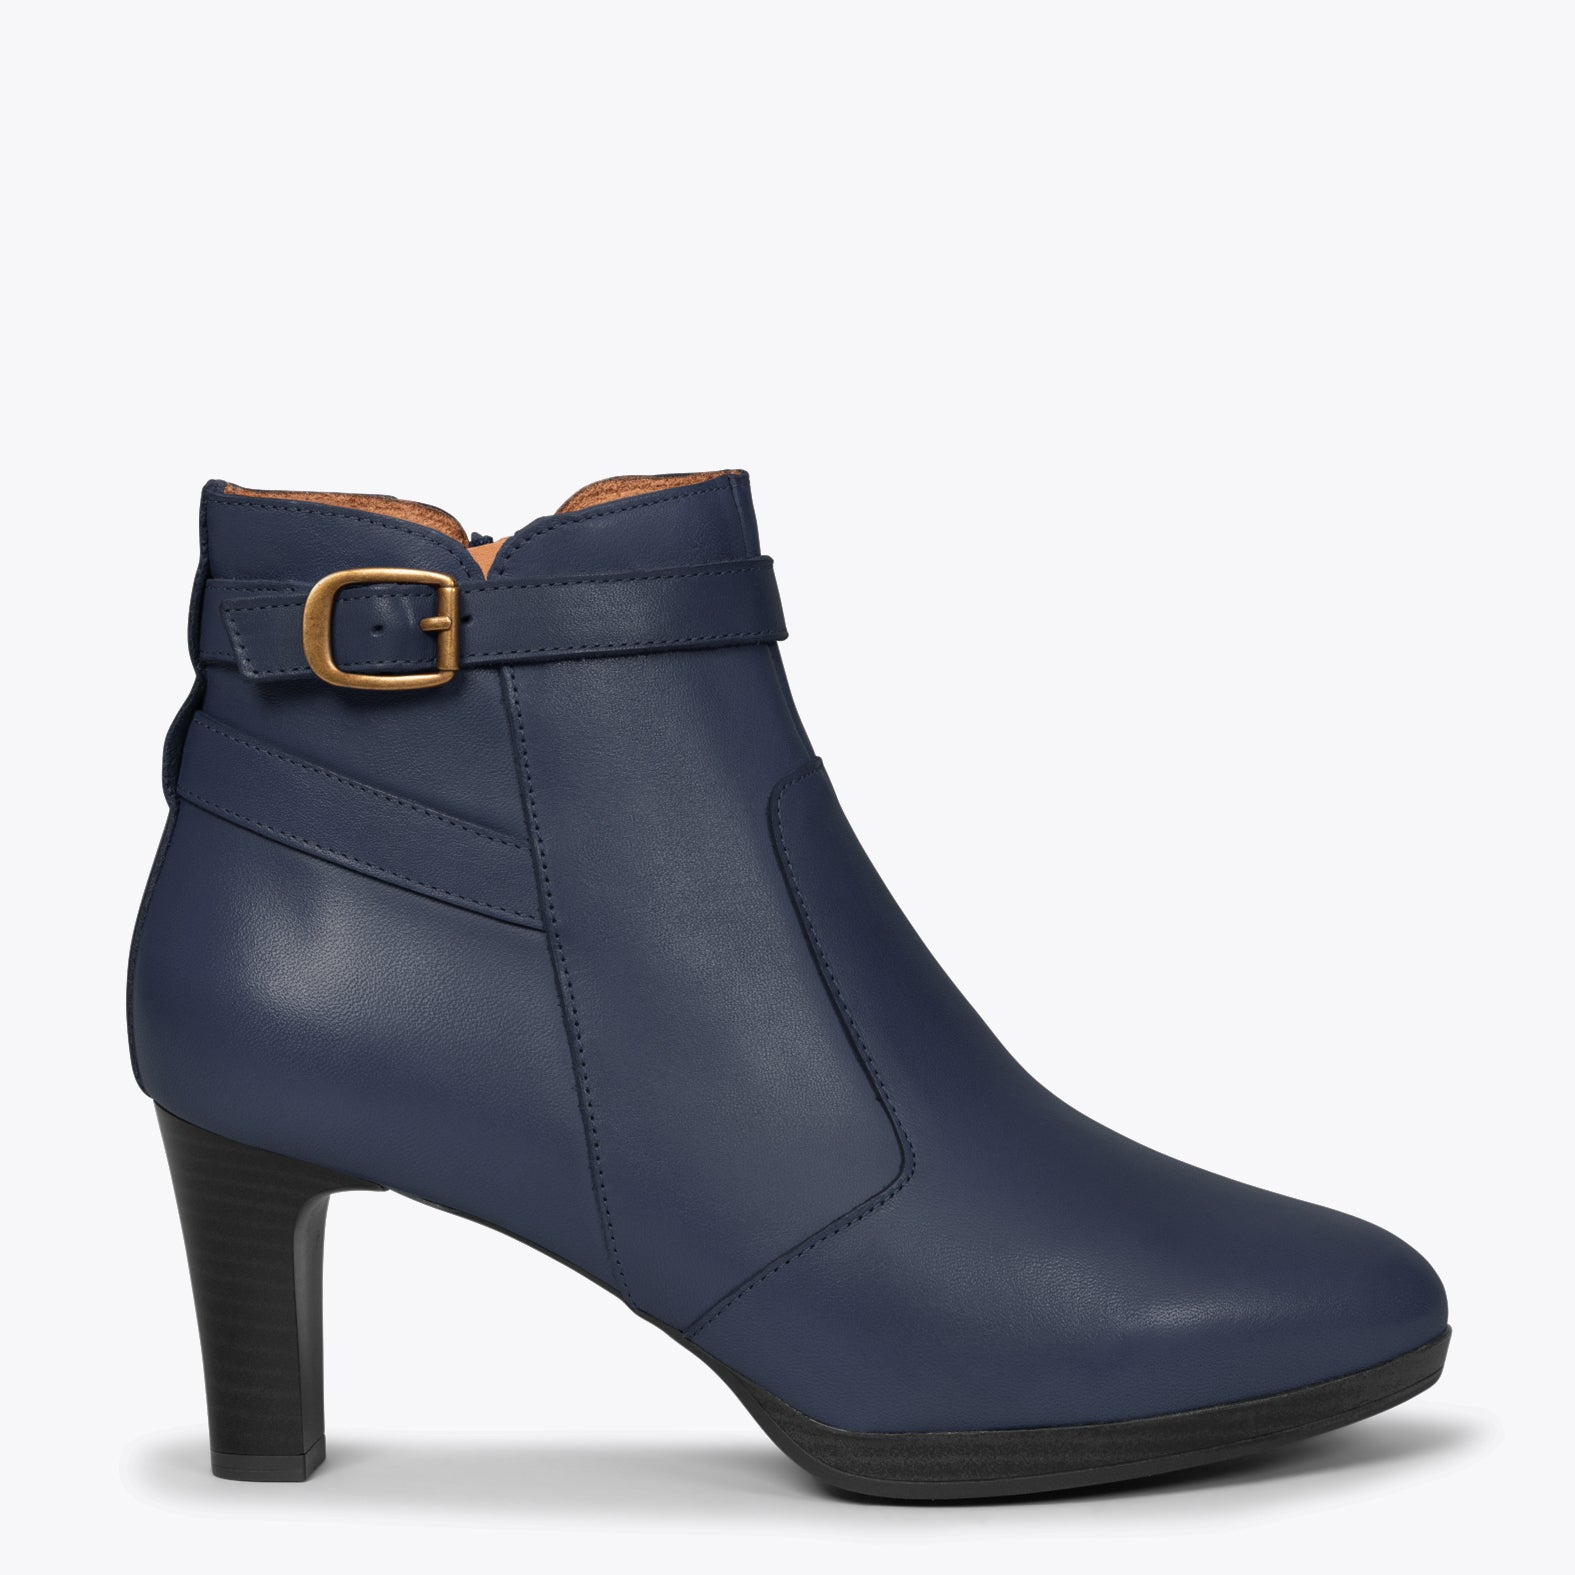 MILAN - NAVY high heel elegant booties